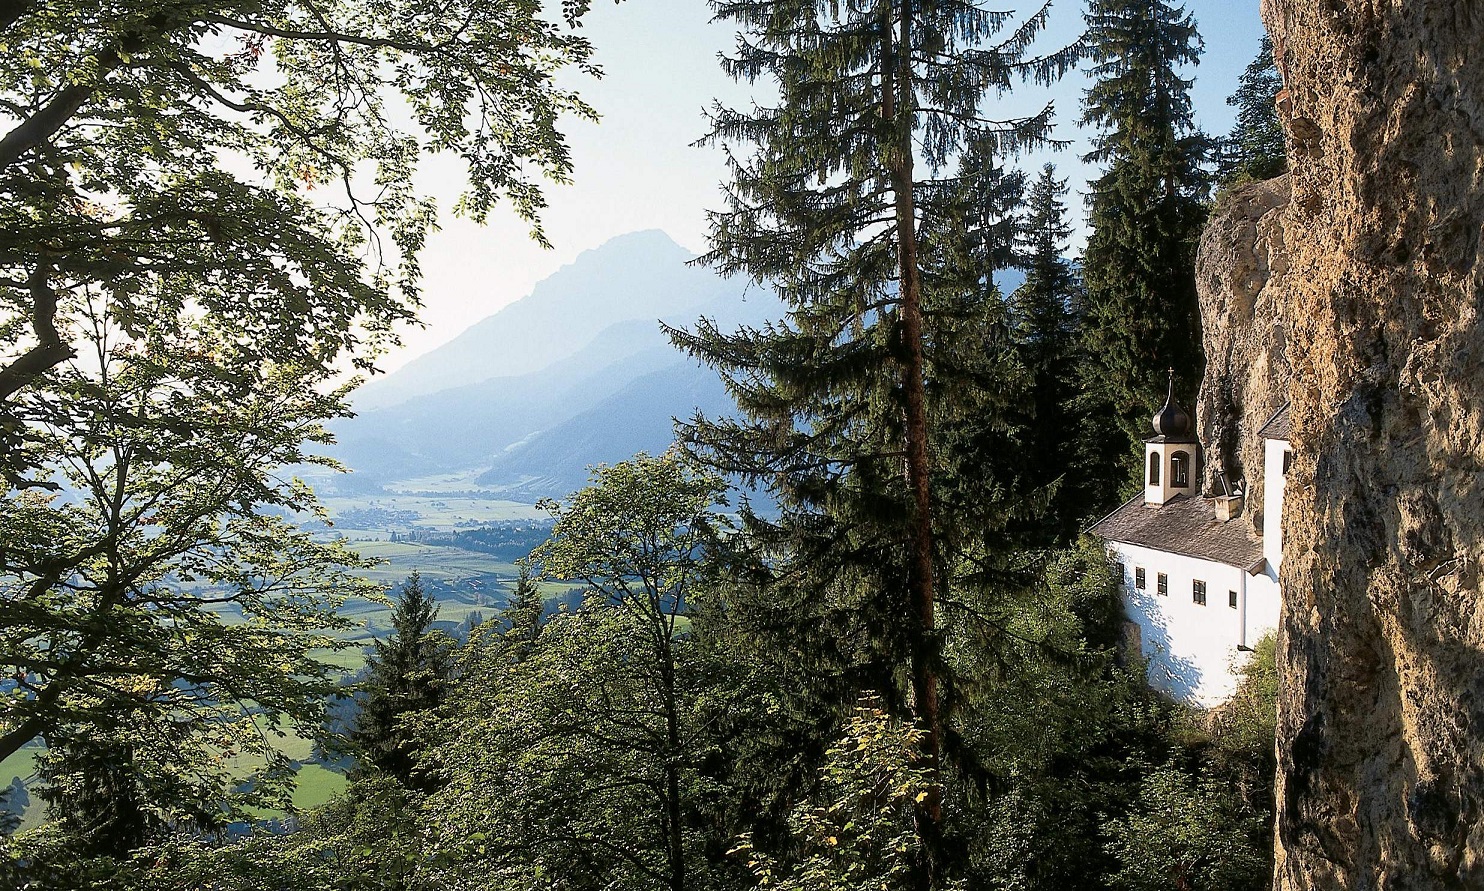 Скит в австрийском высокогорье нашел отшельника по объявлению